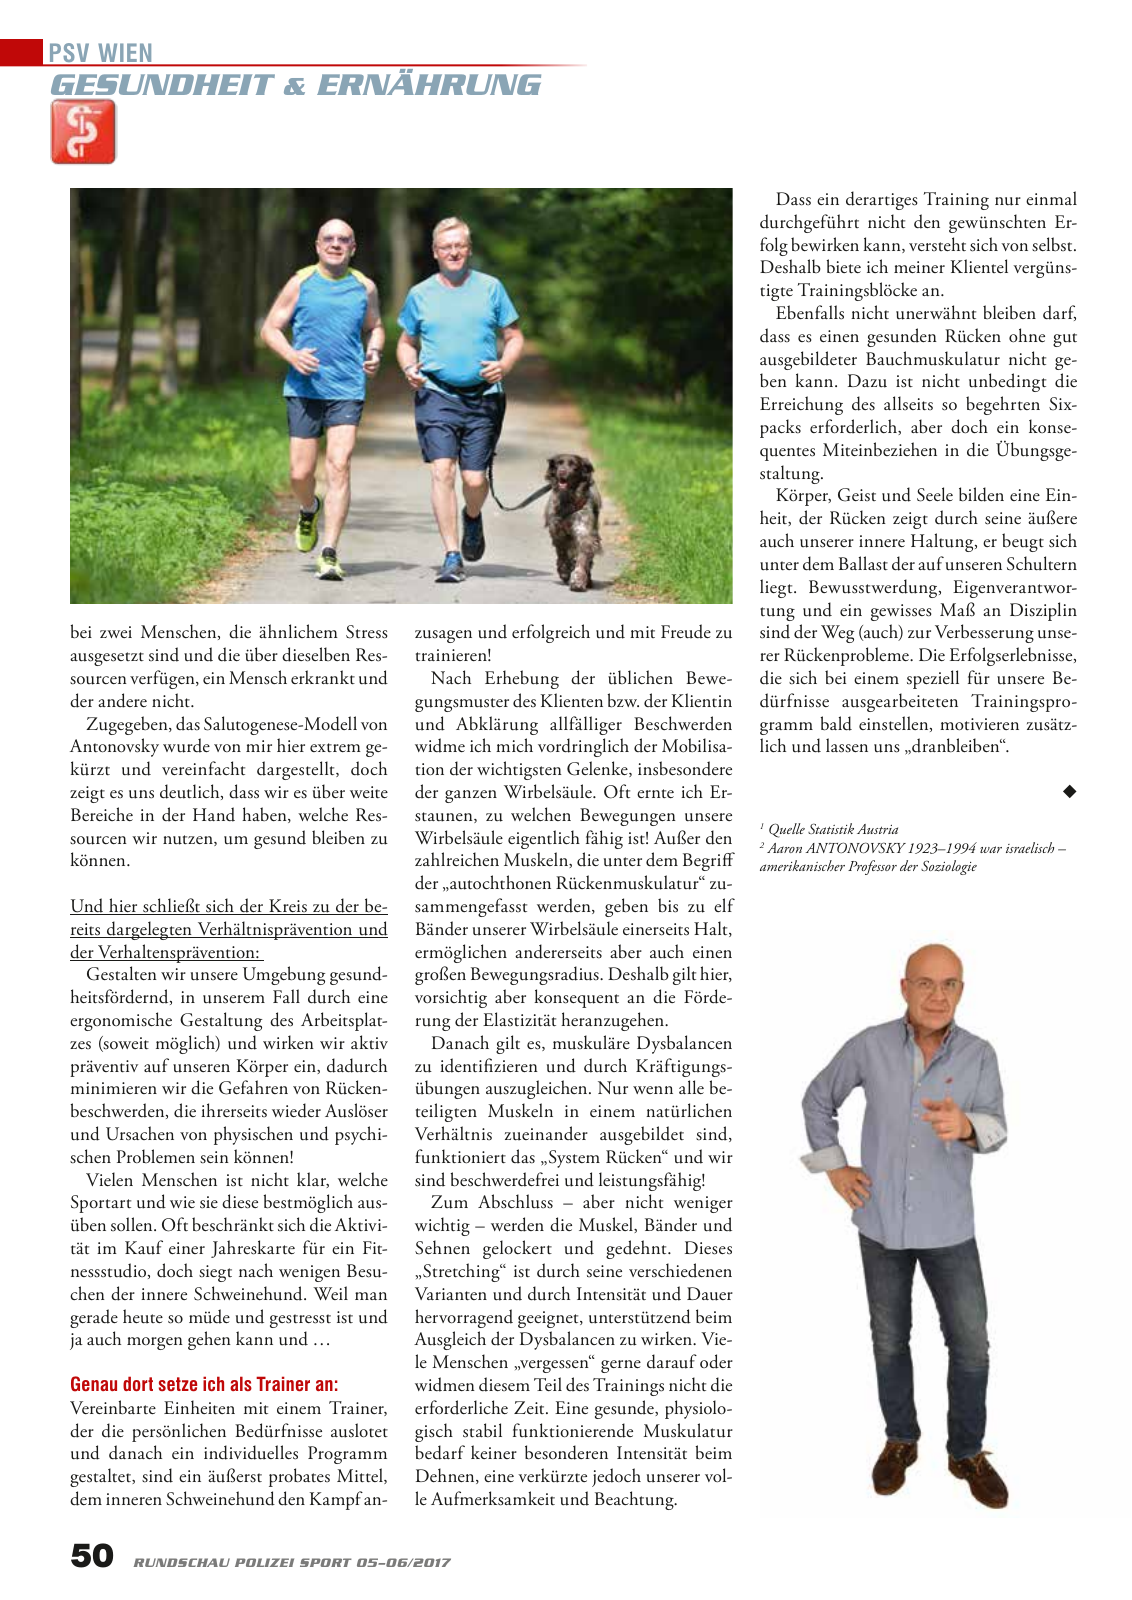 Vorschau Rundschau Polizei Sport 05-06/2017 Seite 50